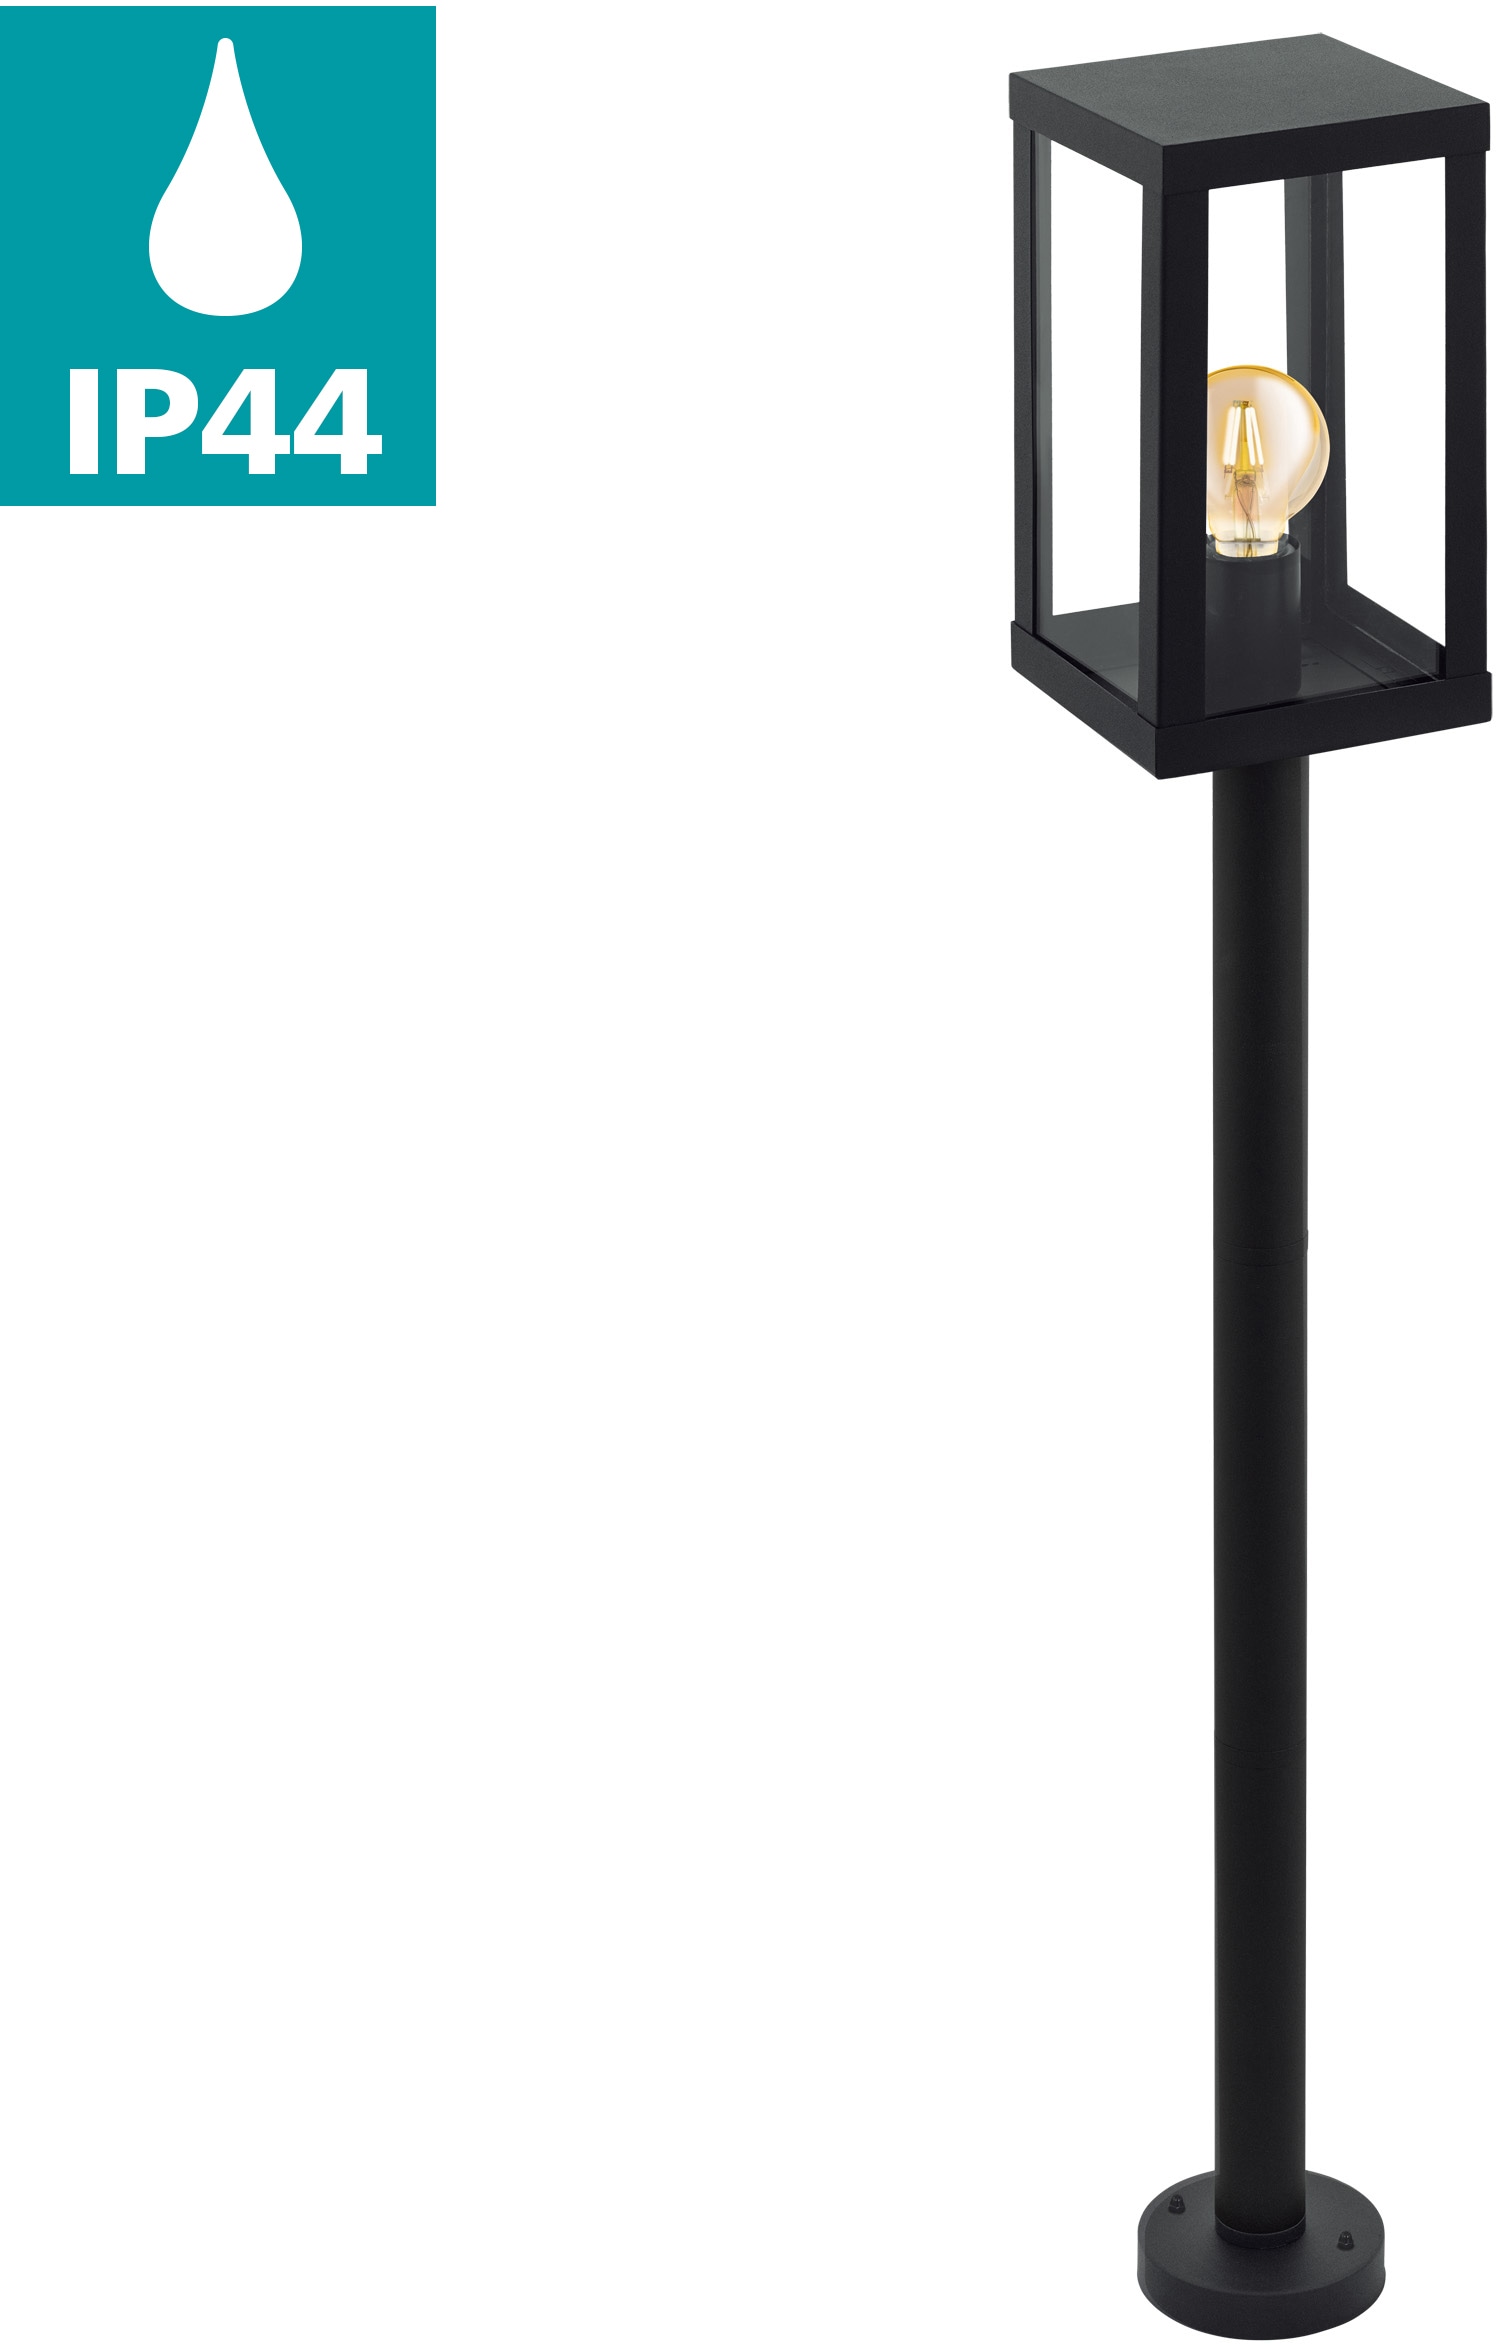 EGLO Außen-Stehlampe "ALAMONTE 1", E27, schwarz / L15 x H101,5 x B15 cm / exkl. 1 x E27 (je max. 60W) - IP44 spritzwassergeschützt - Leuchte - Garten - Eingangsbereich - Vintage - Retro - Rustikal - Stehlampe für Außenbereich - witterungsbeständig von EGLO